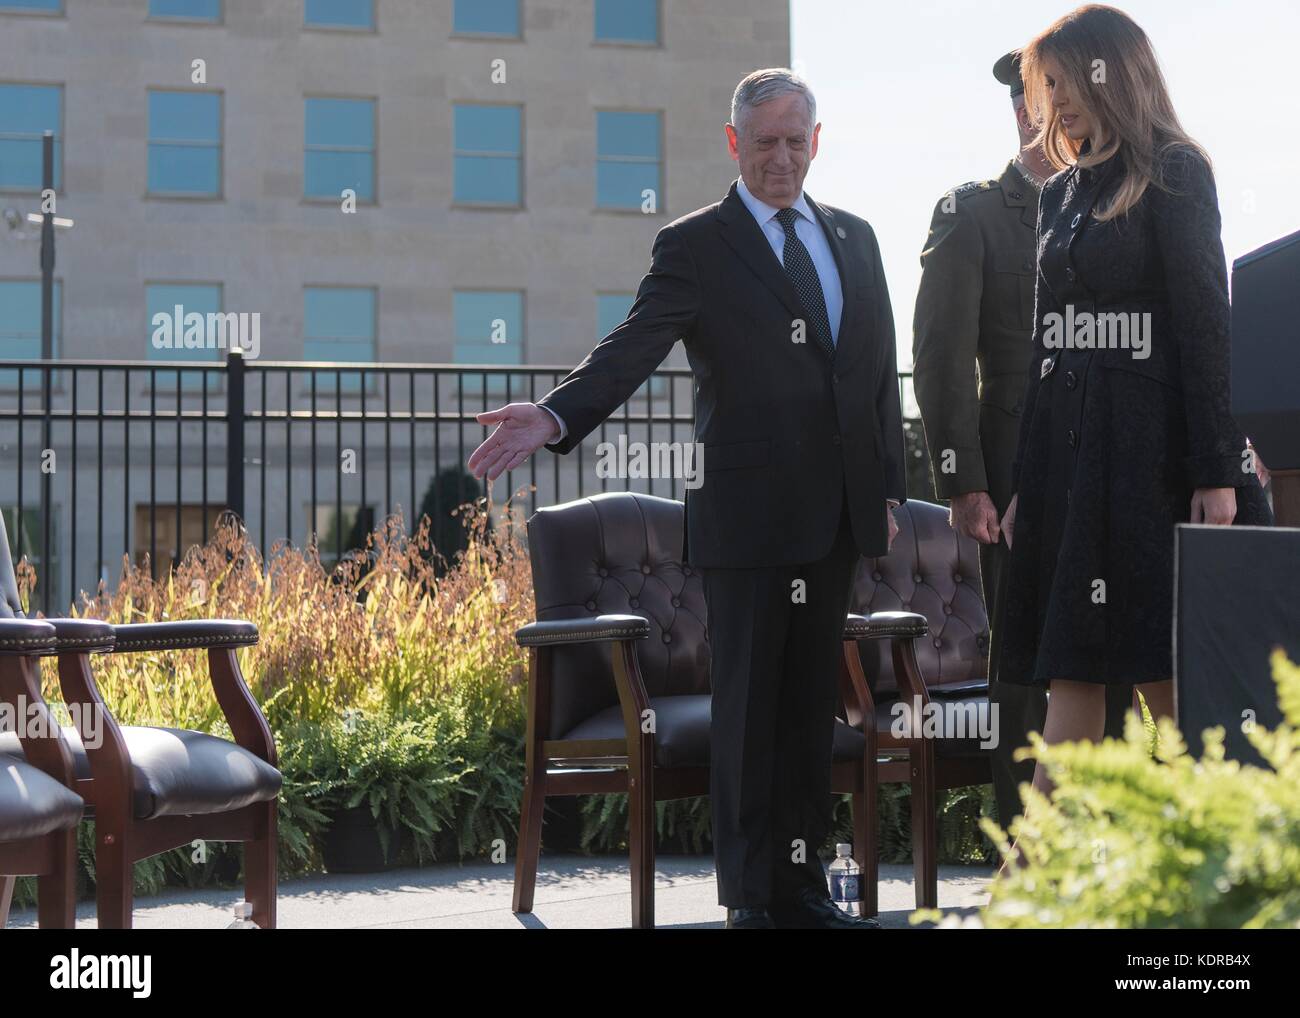 Negli Stati Uniti il segretario della difesa james mattis e stati uniti prima signora melania trump arrivano al 9/11 osservanza cerimonia al Pentagono l'11 settembre 2017 a Washington, DC. Foto Stock